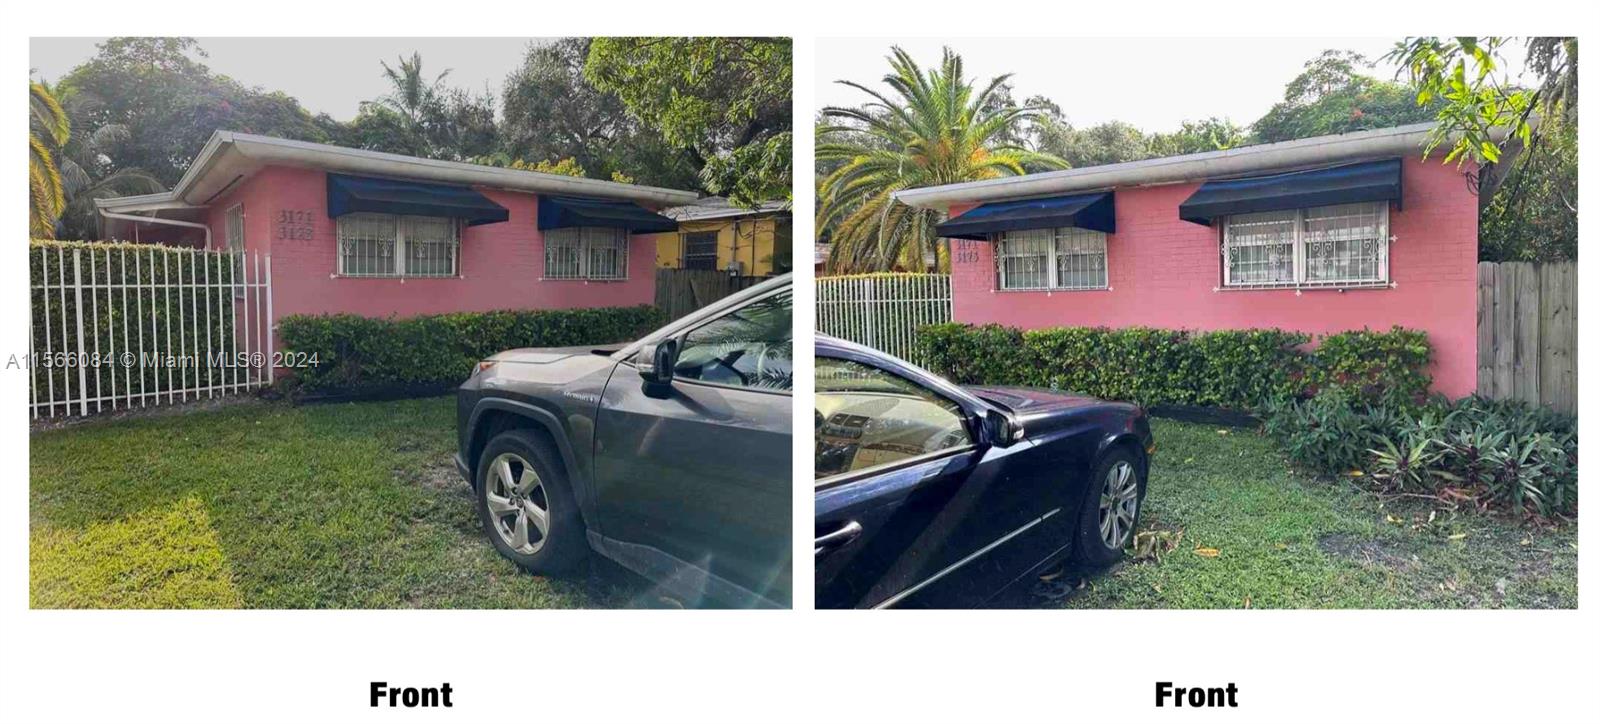 Rental Property at 3171 Mcdonald St St, Miami, Broward County, Florida -  - $12,000,000 MO.